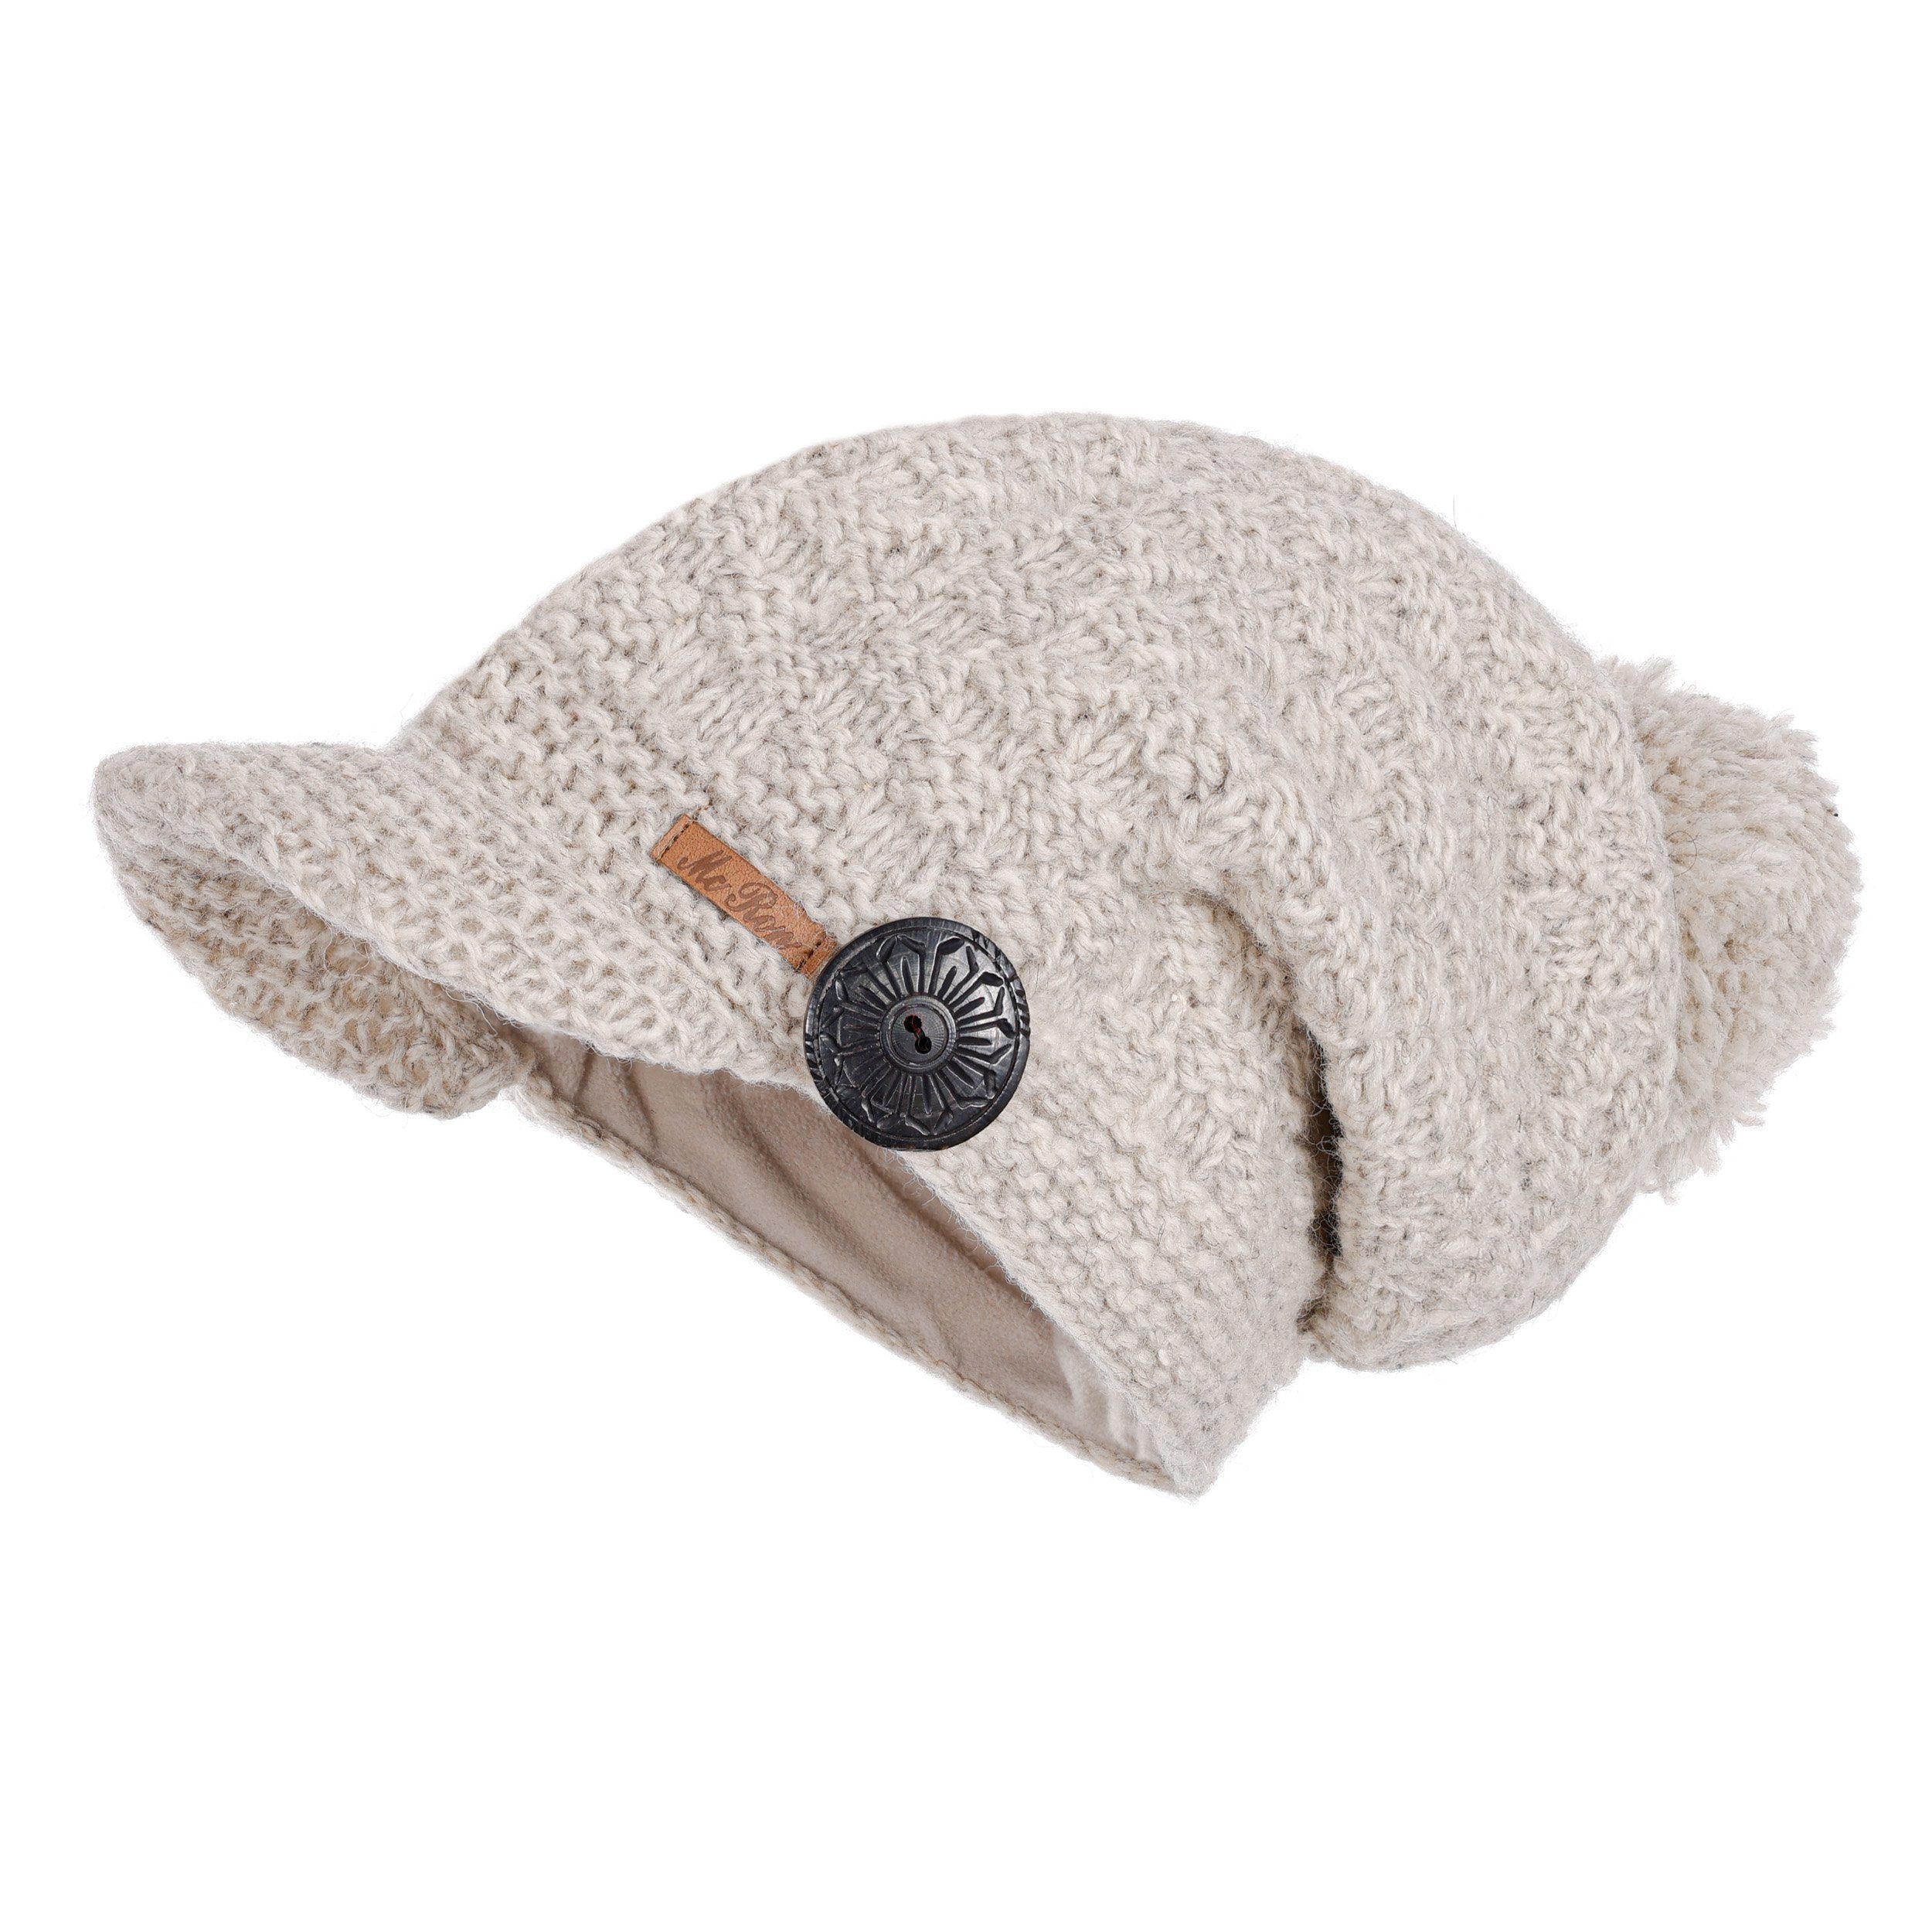 McRon Strickmütze Wollmütze Modell Mika mit Fleece gefüttert Naturhellgrau | Strickmützen